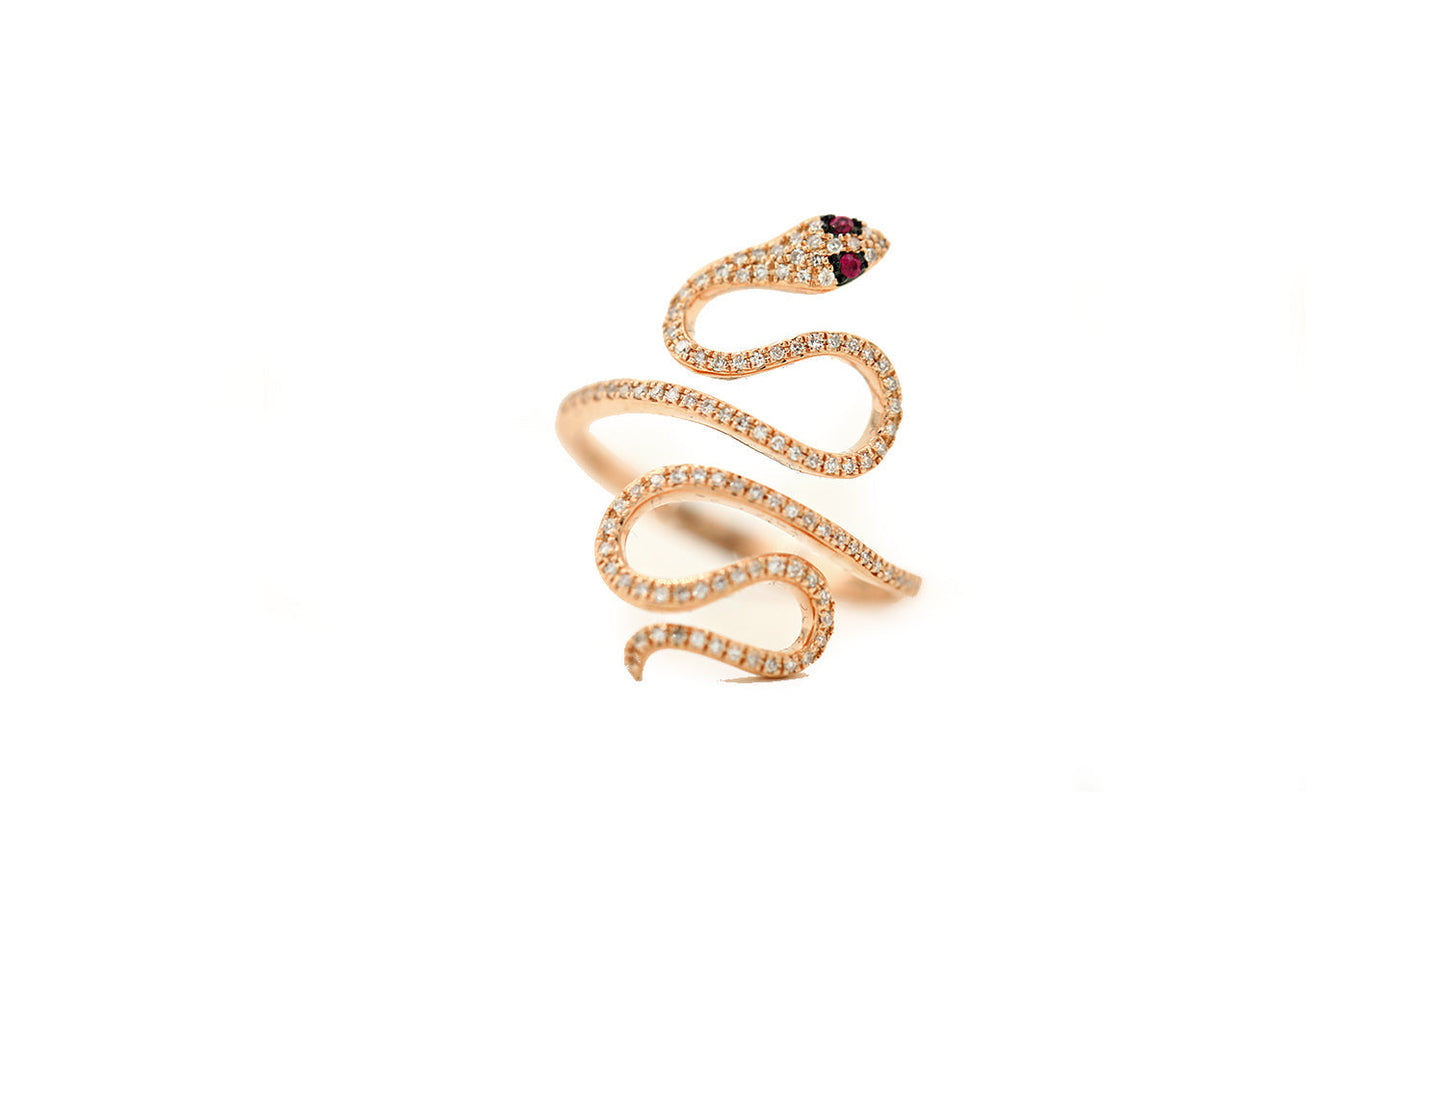 14k Rose Gold Diamond Pave Snake with Ruby Eye